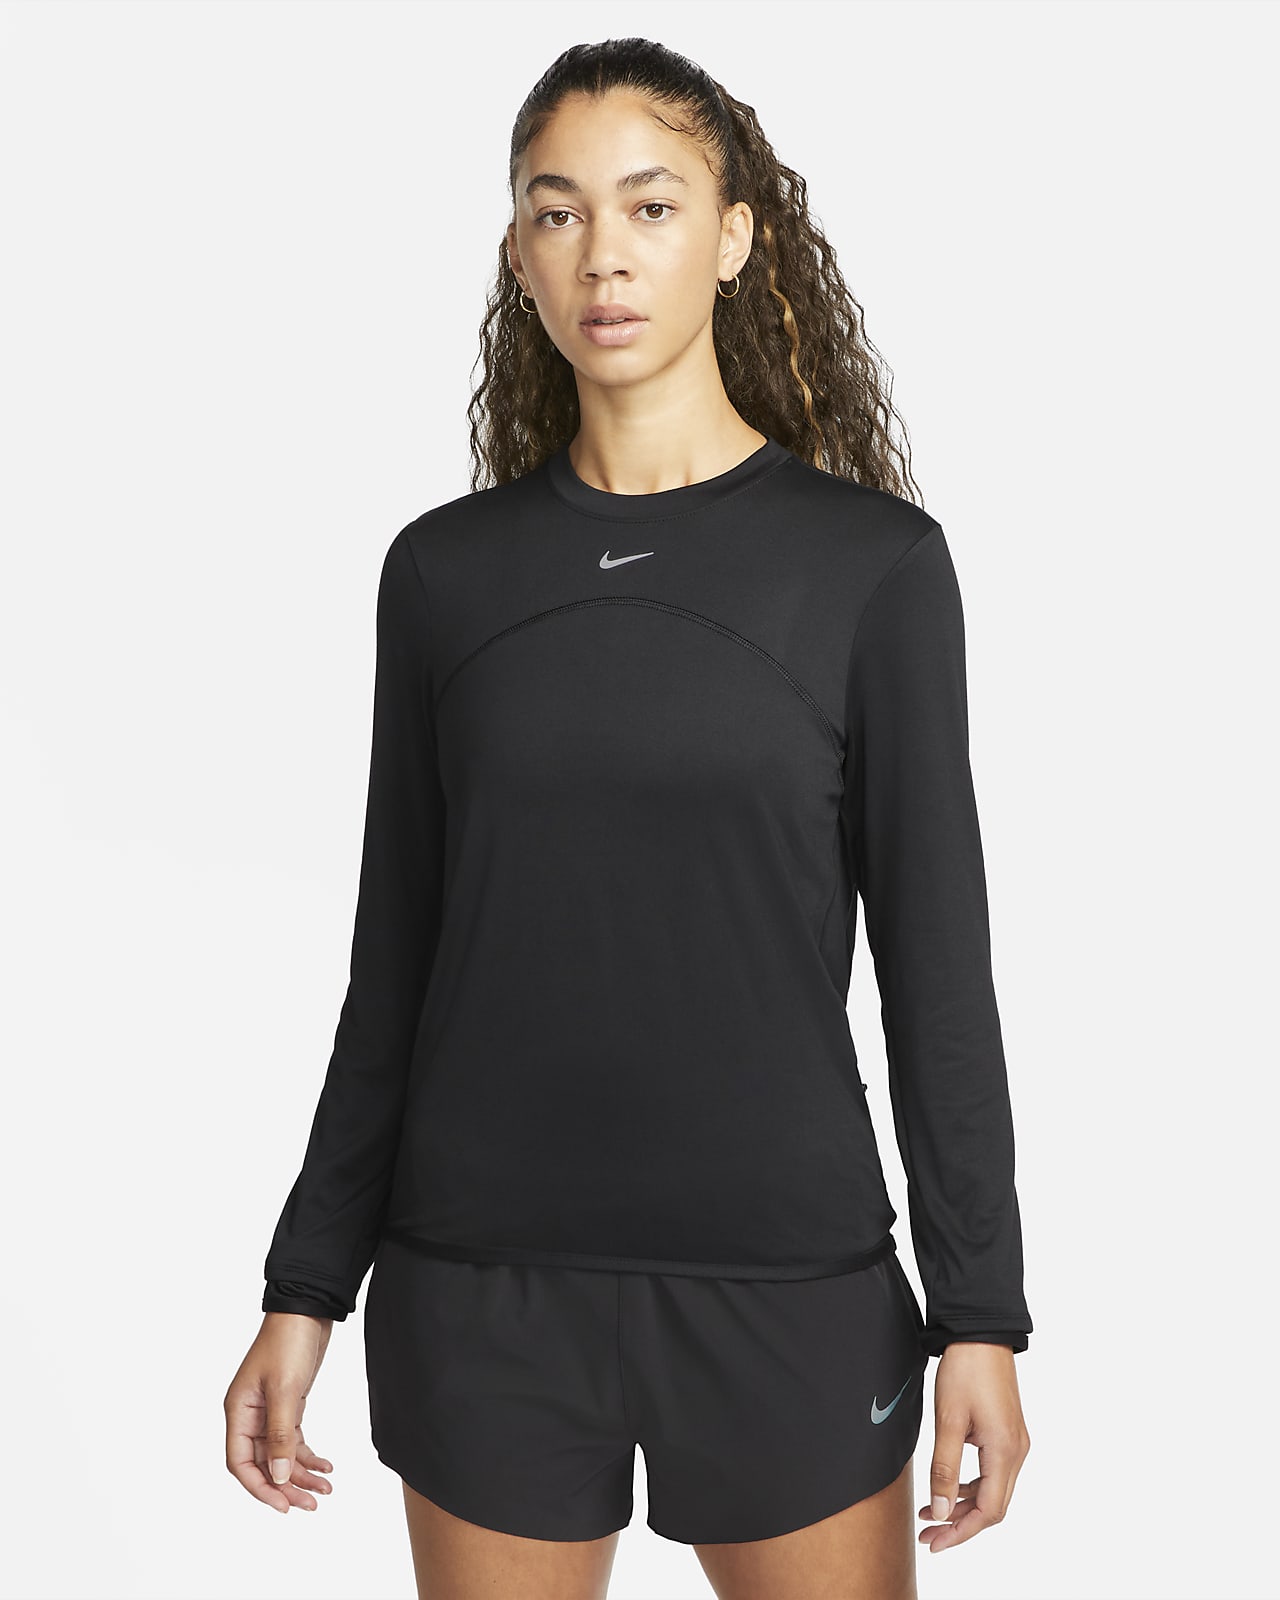 Nike Dri-FIT Swift elem UV kerek nyakkivágású női futófelső